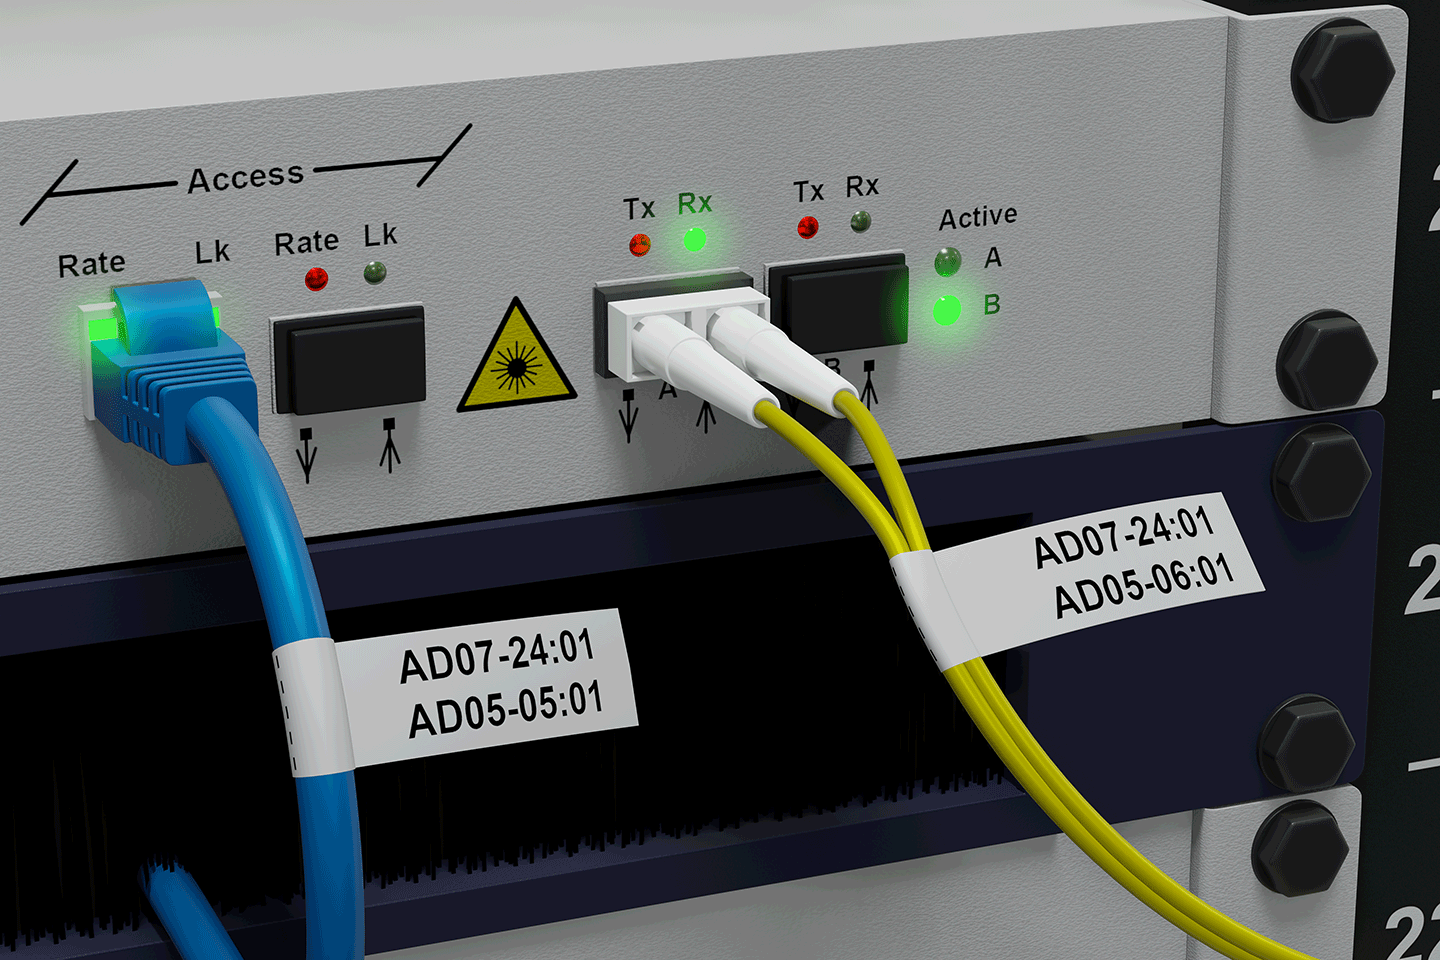 PT-E550WNIVP märknings-kit för nätverksinstallatörer 7